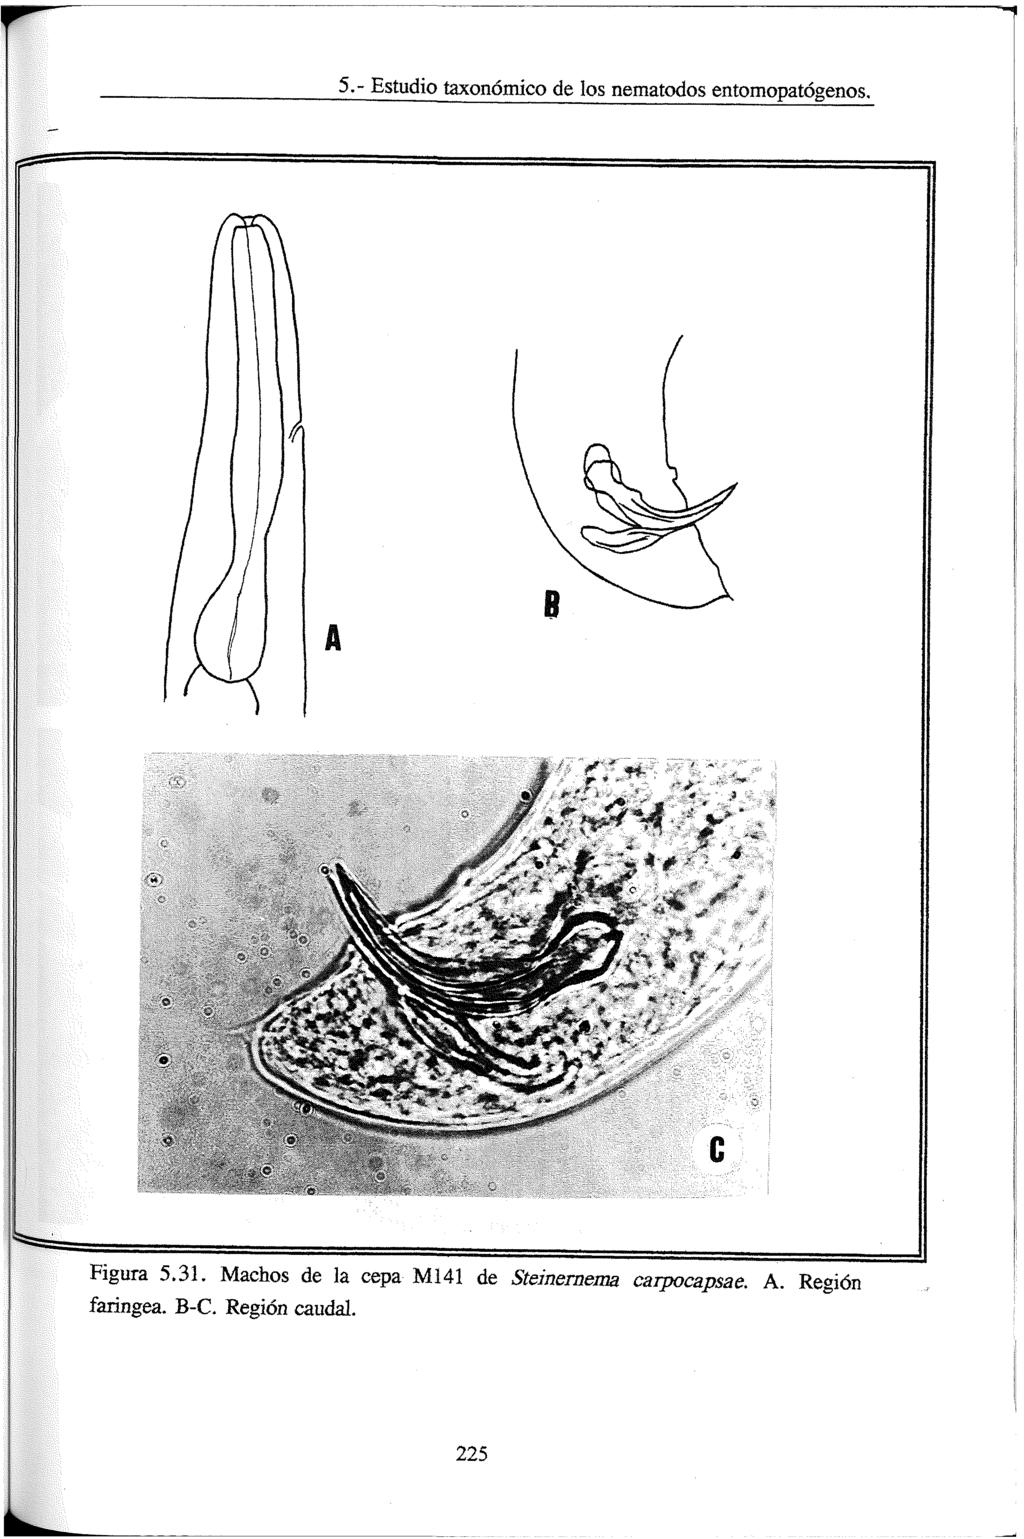 5.- Estudio taxonómico de los nematodos entomopatógenos. Figura 5.31.